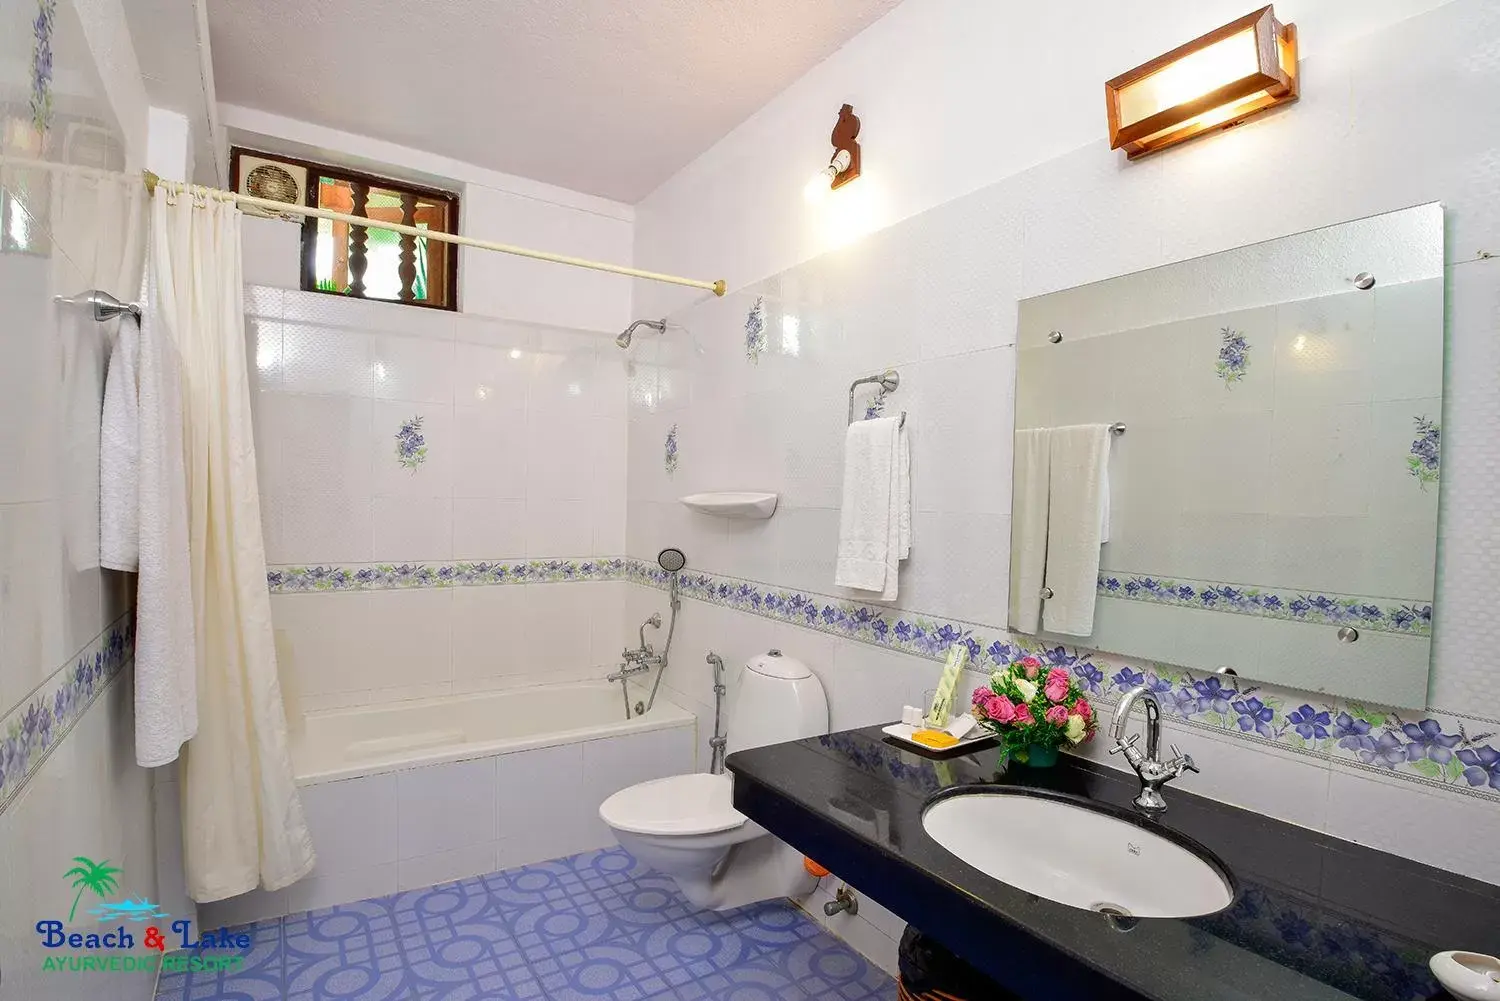 Bathroom in Beach and Lake Ayurvedic Resort